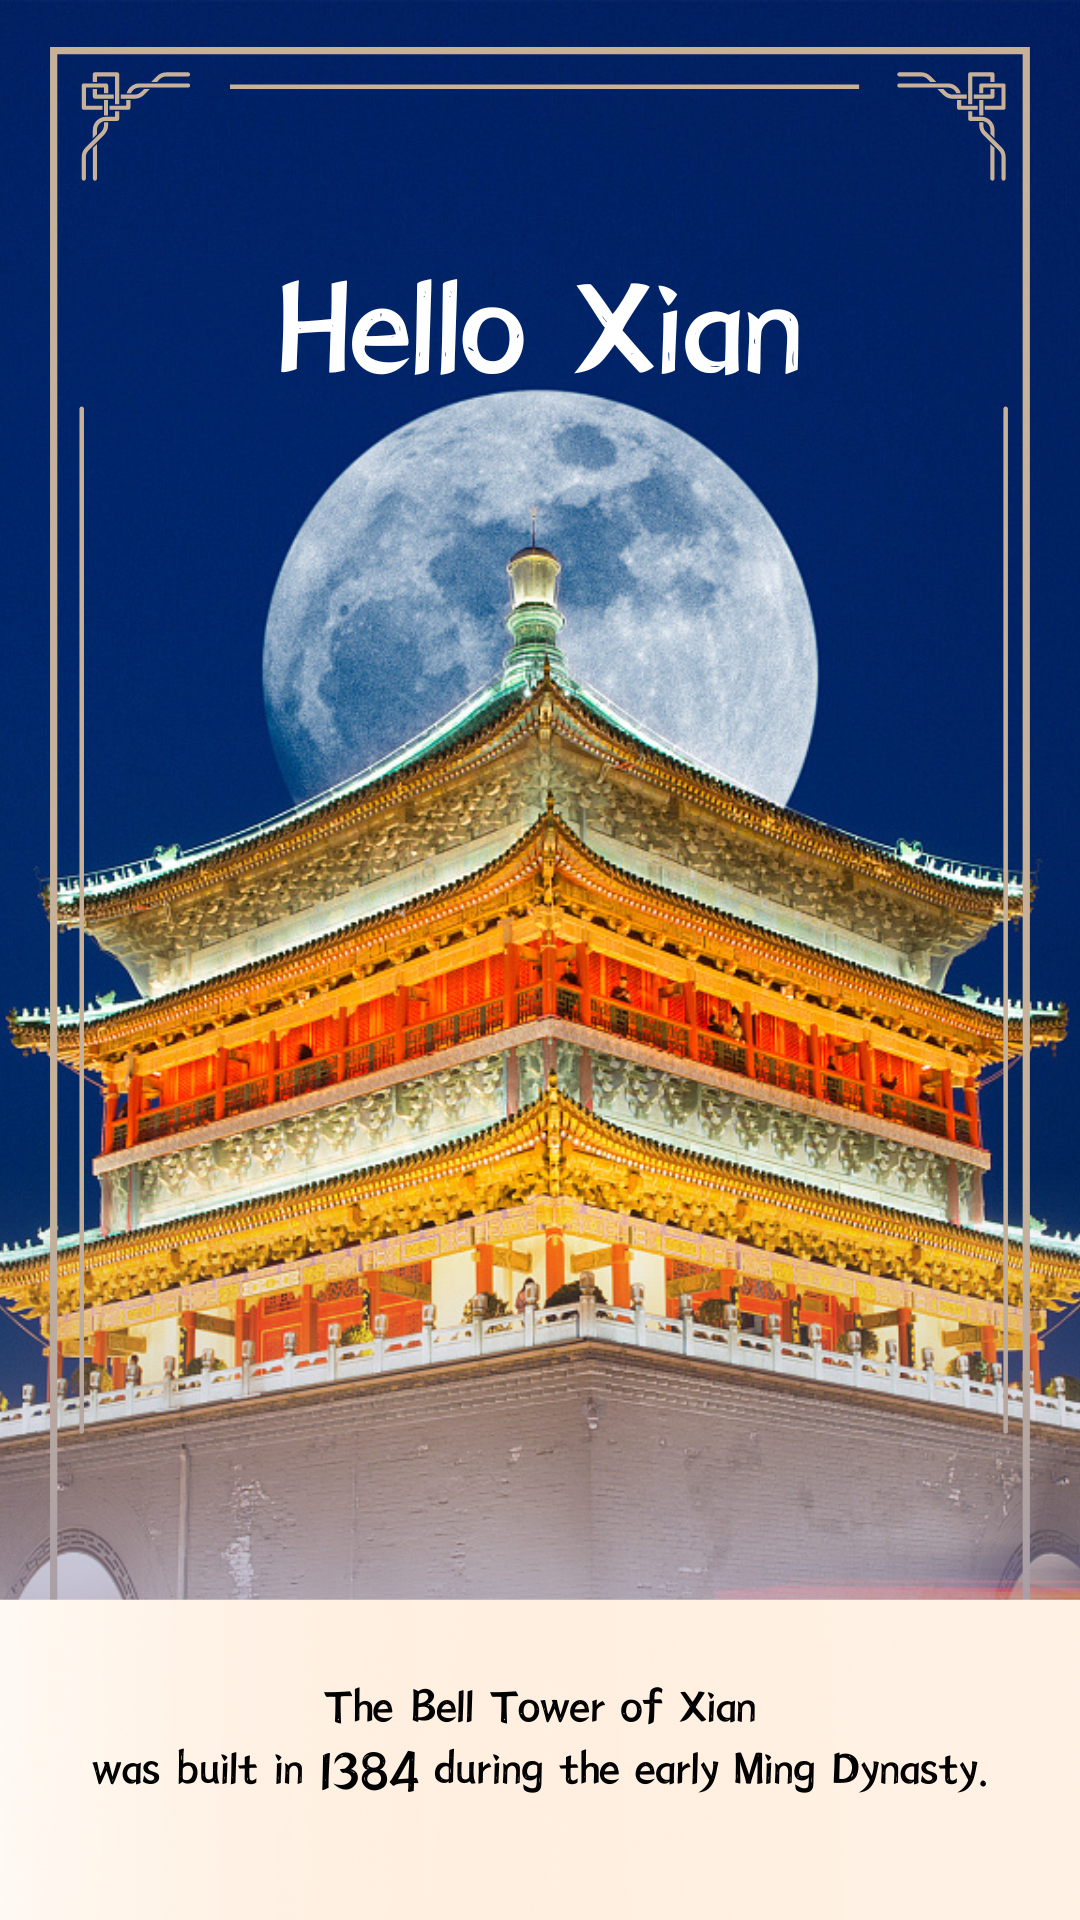 Xian’s ancient Bell Tower lights up city center